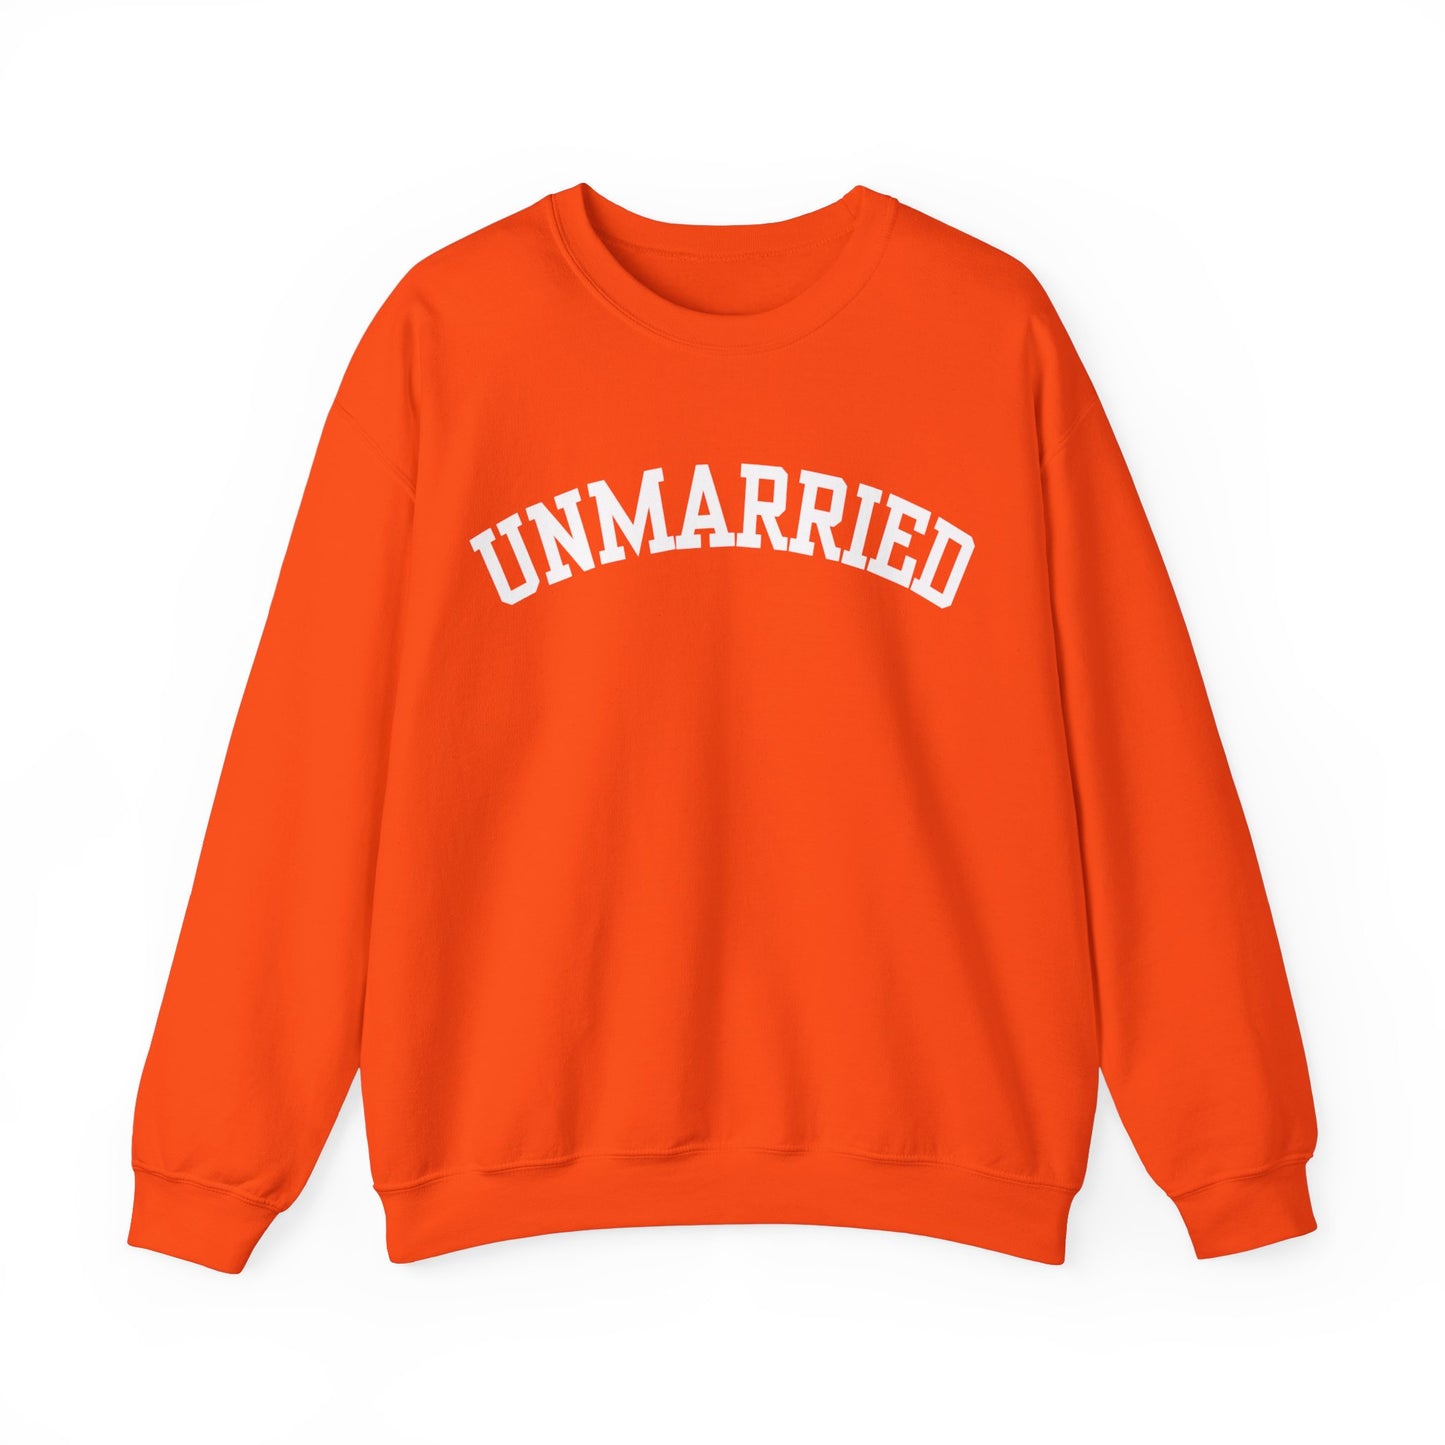 "Unmarried" Sweatshirt